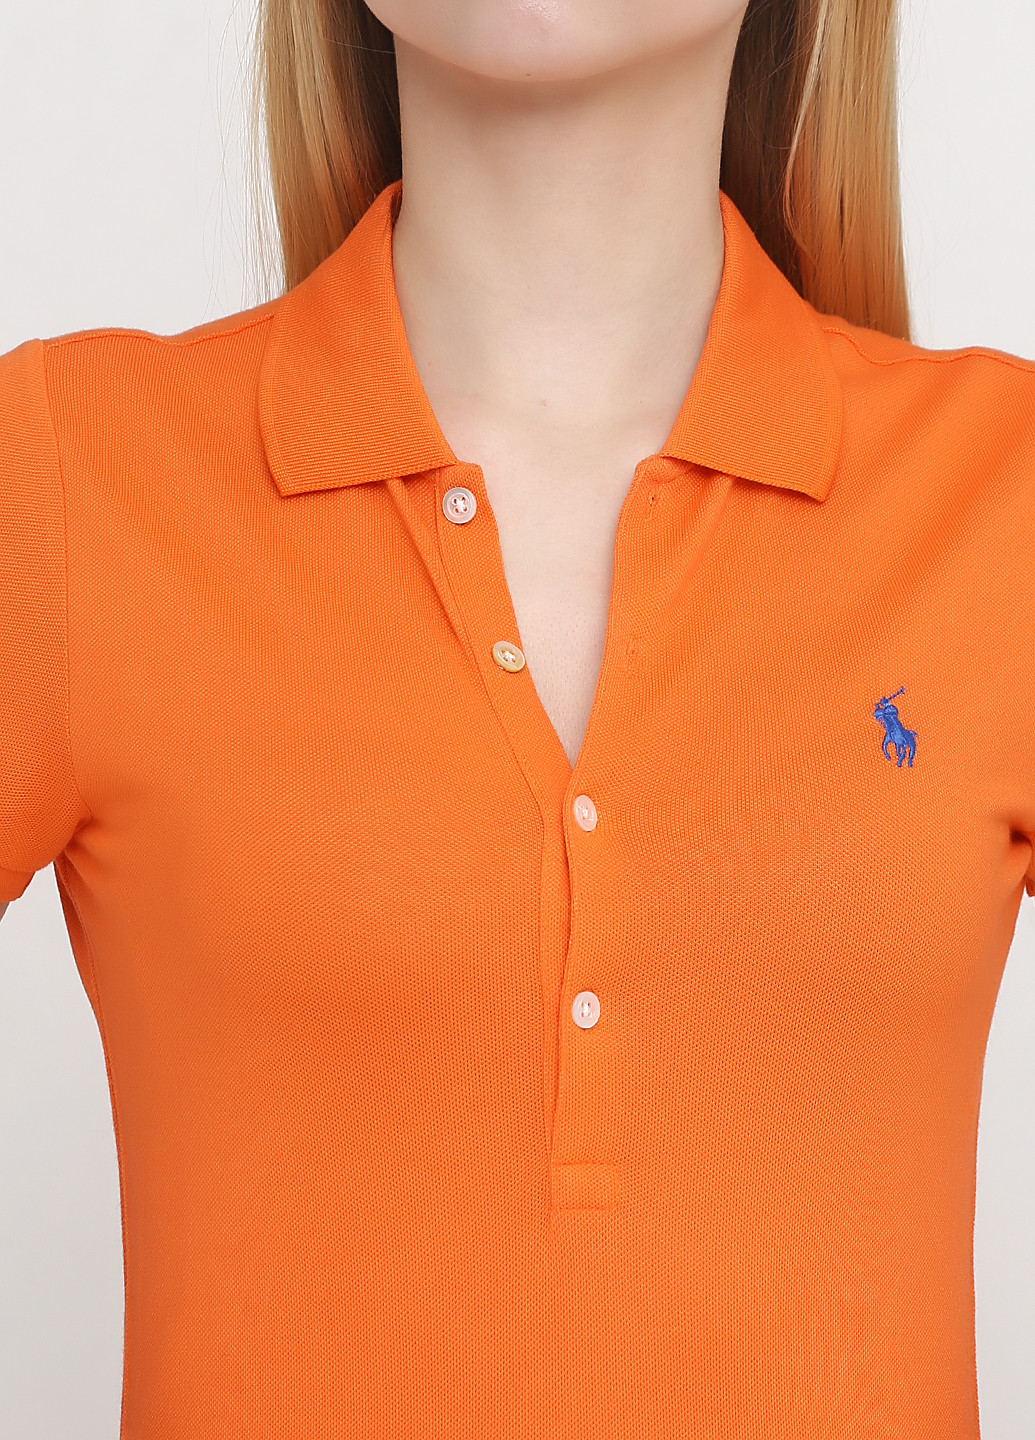 Оранжевая женская футболка-поло Ralph Lauren с логотипом